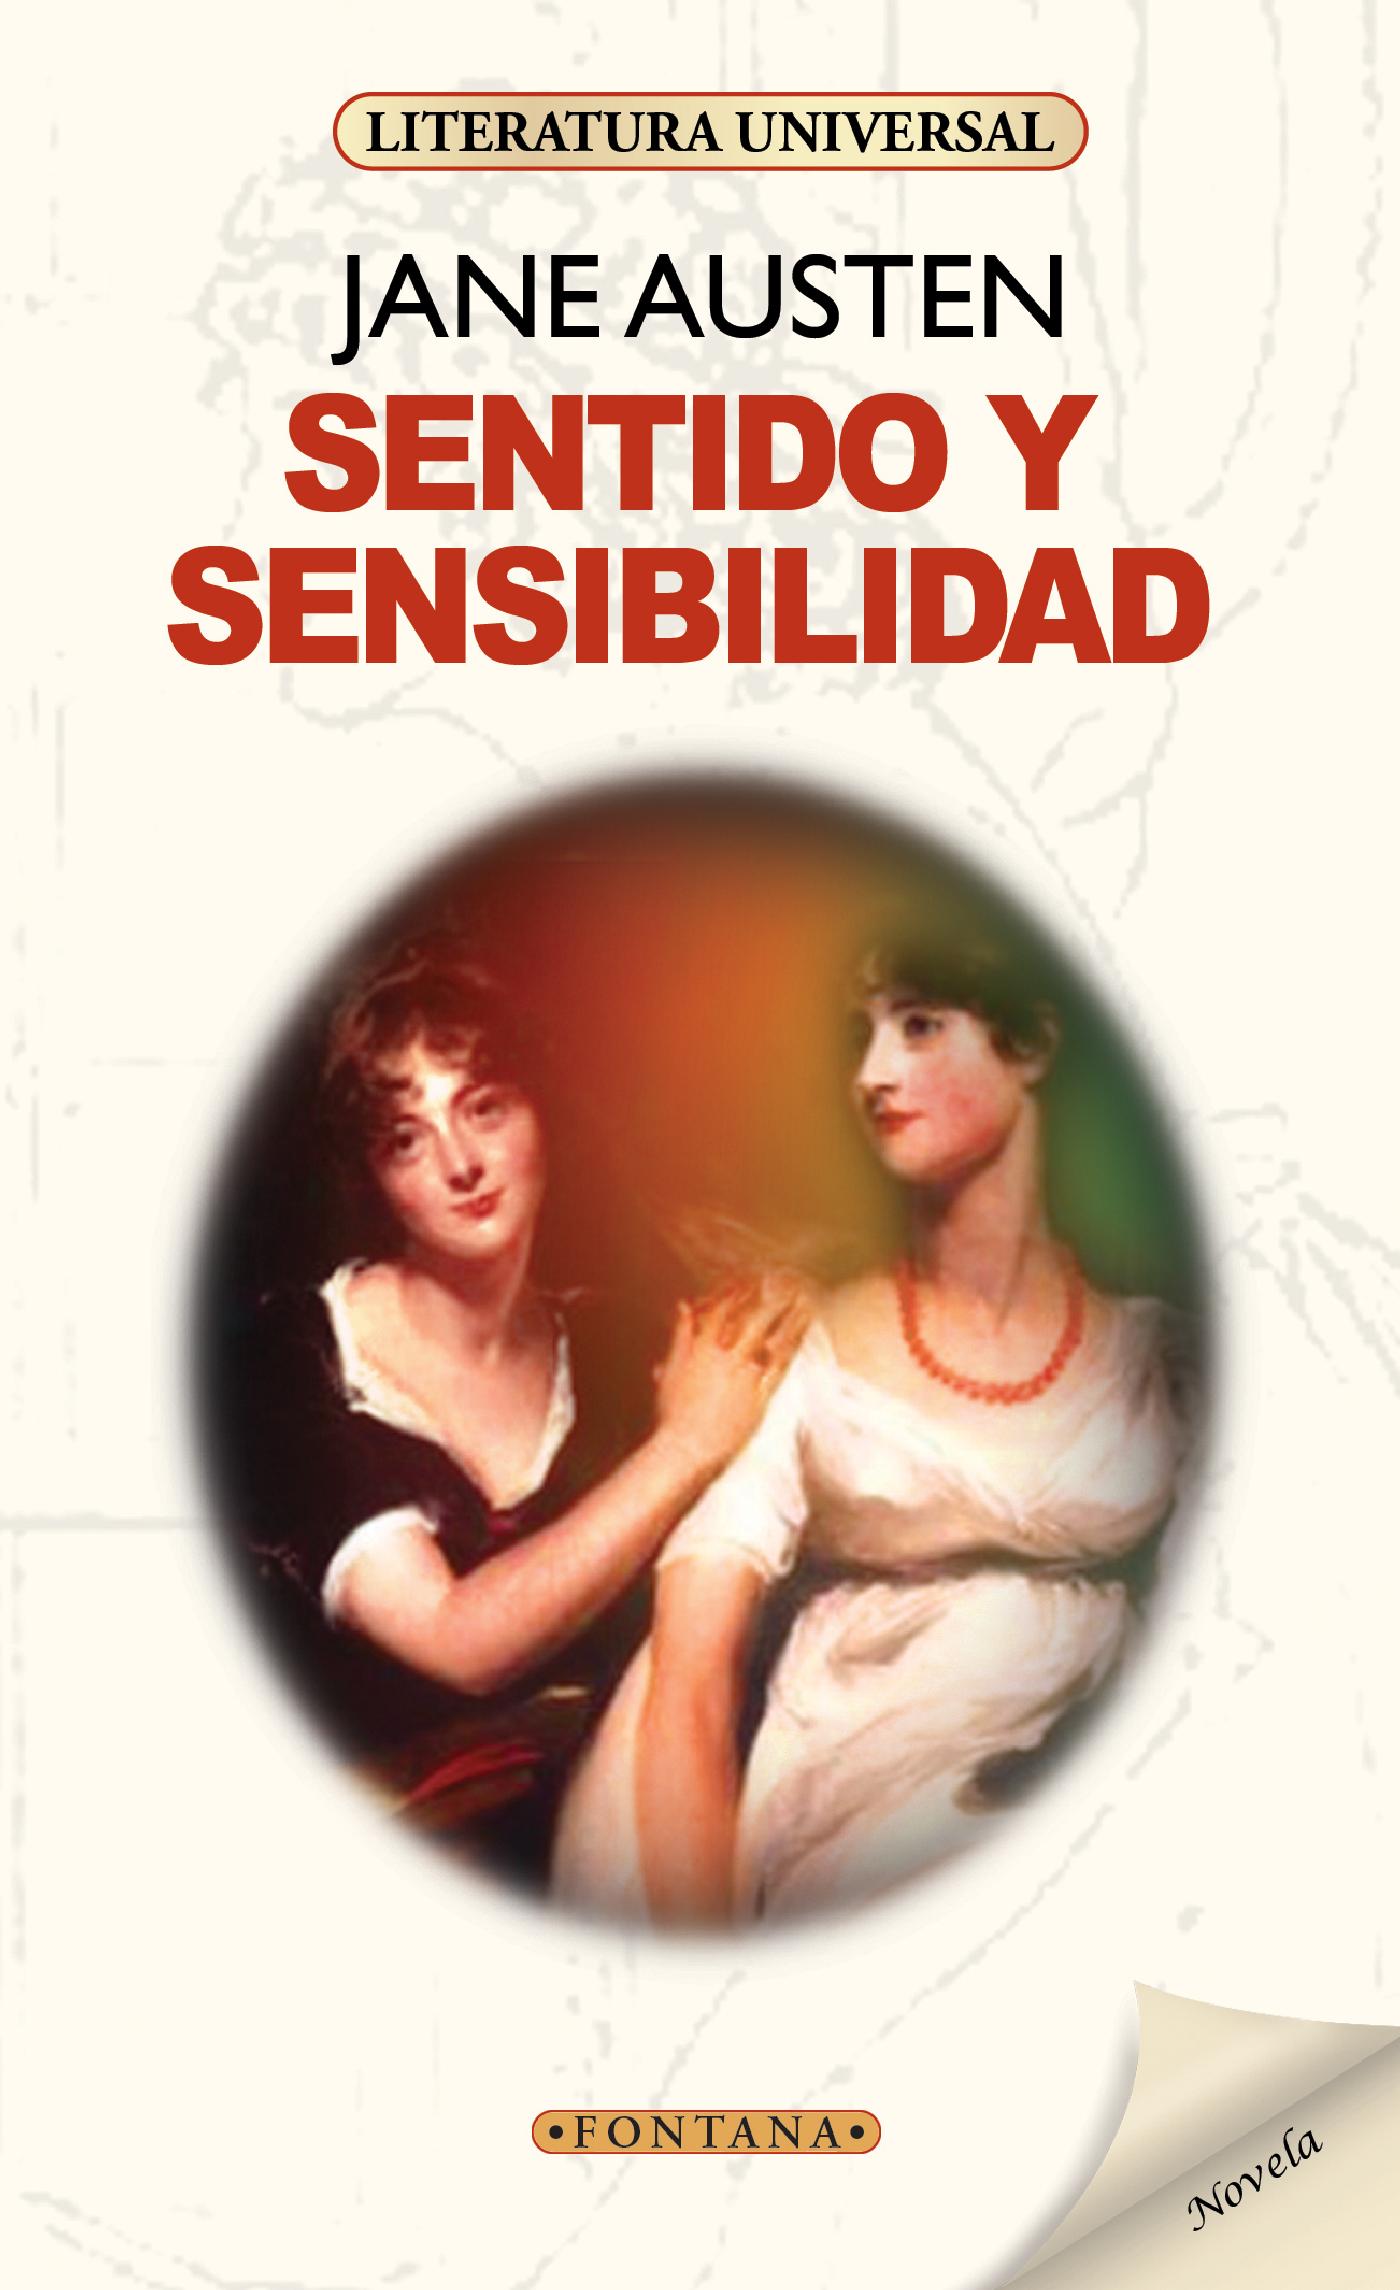 SENTIDO Y SENSIBILIDAD (JANE AUstEN) (38